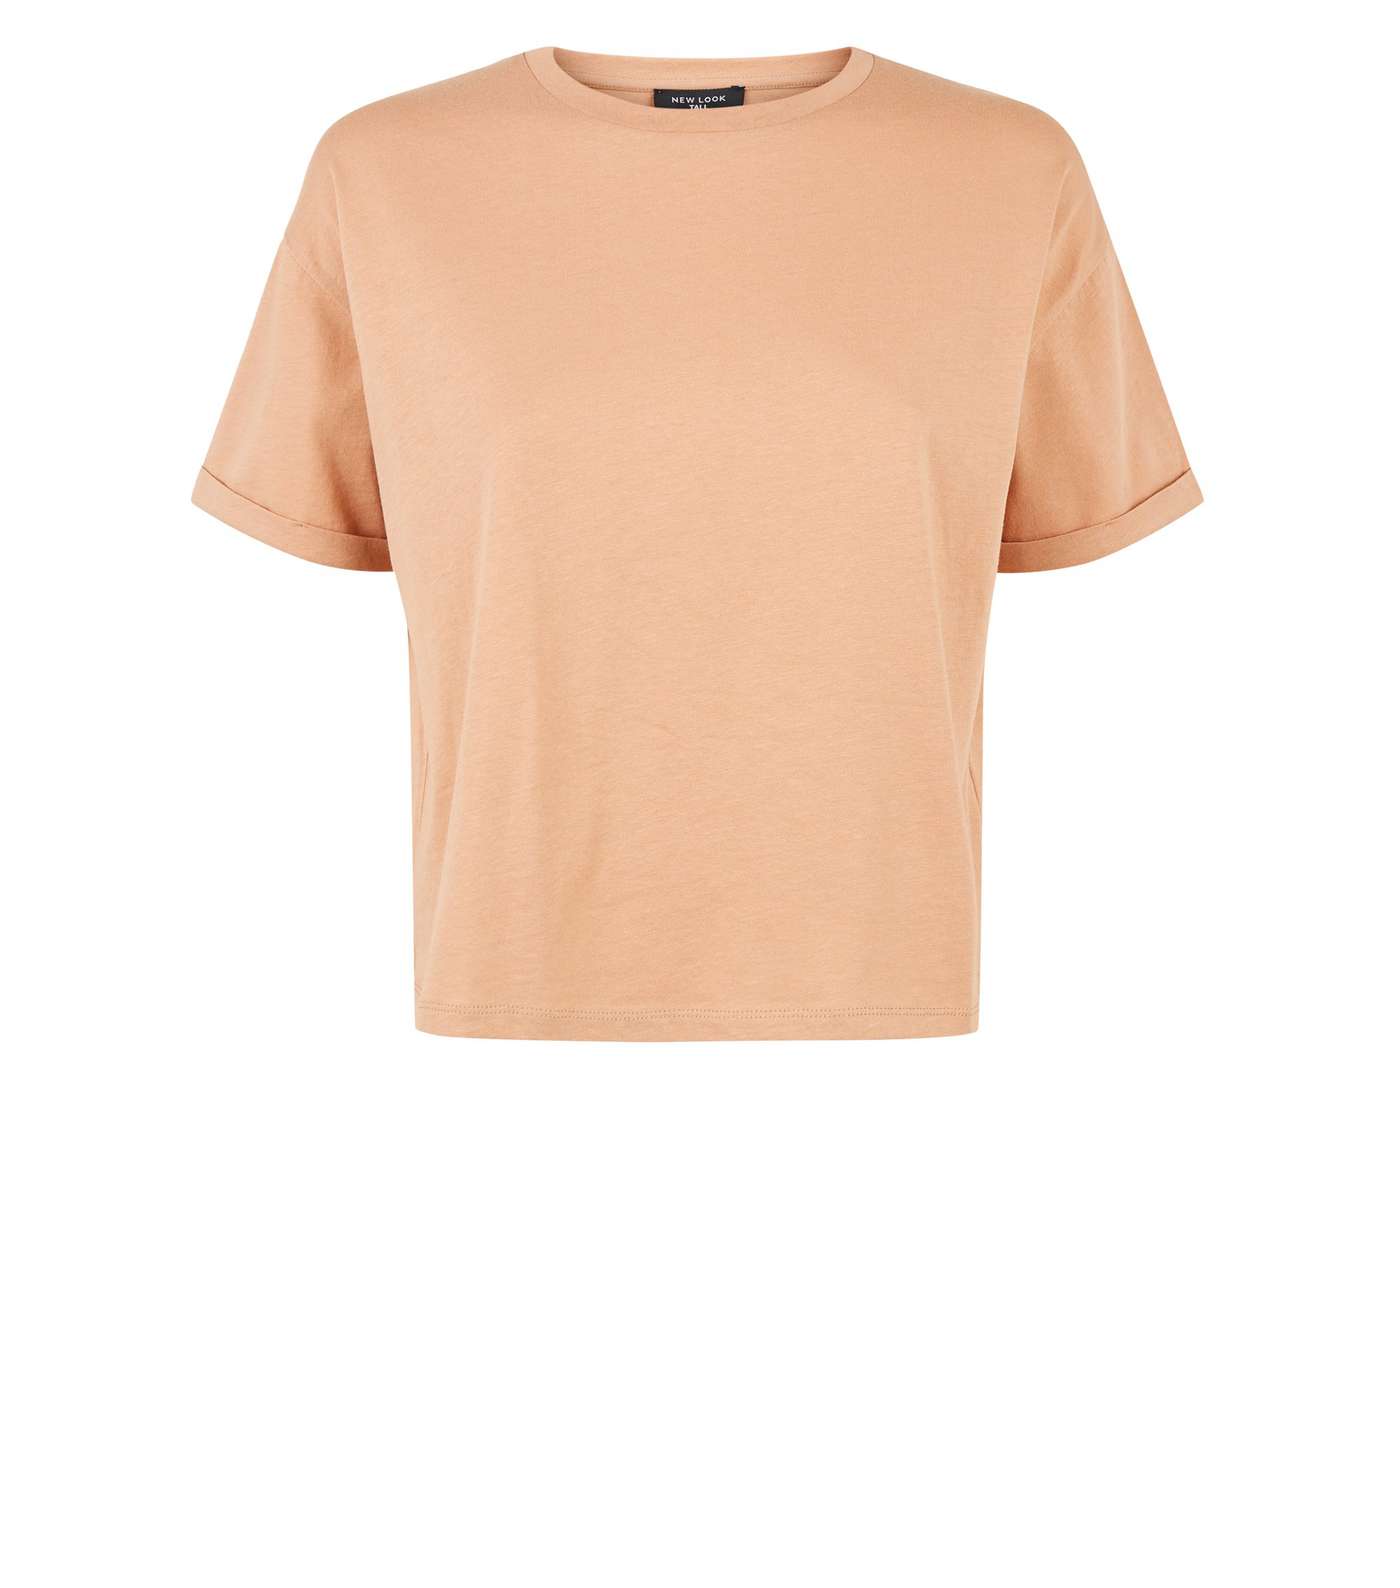 Camel Boxy Cropped T-Shirt Image 4